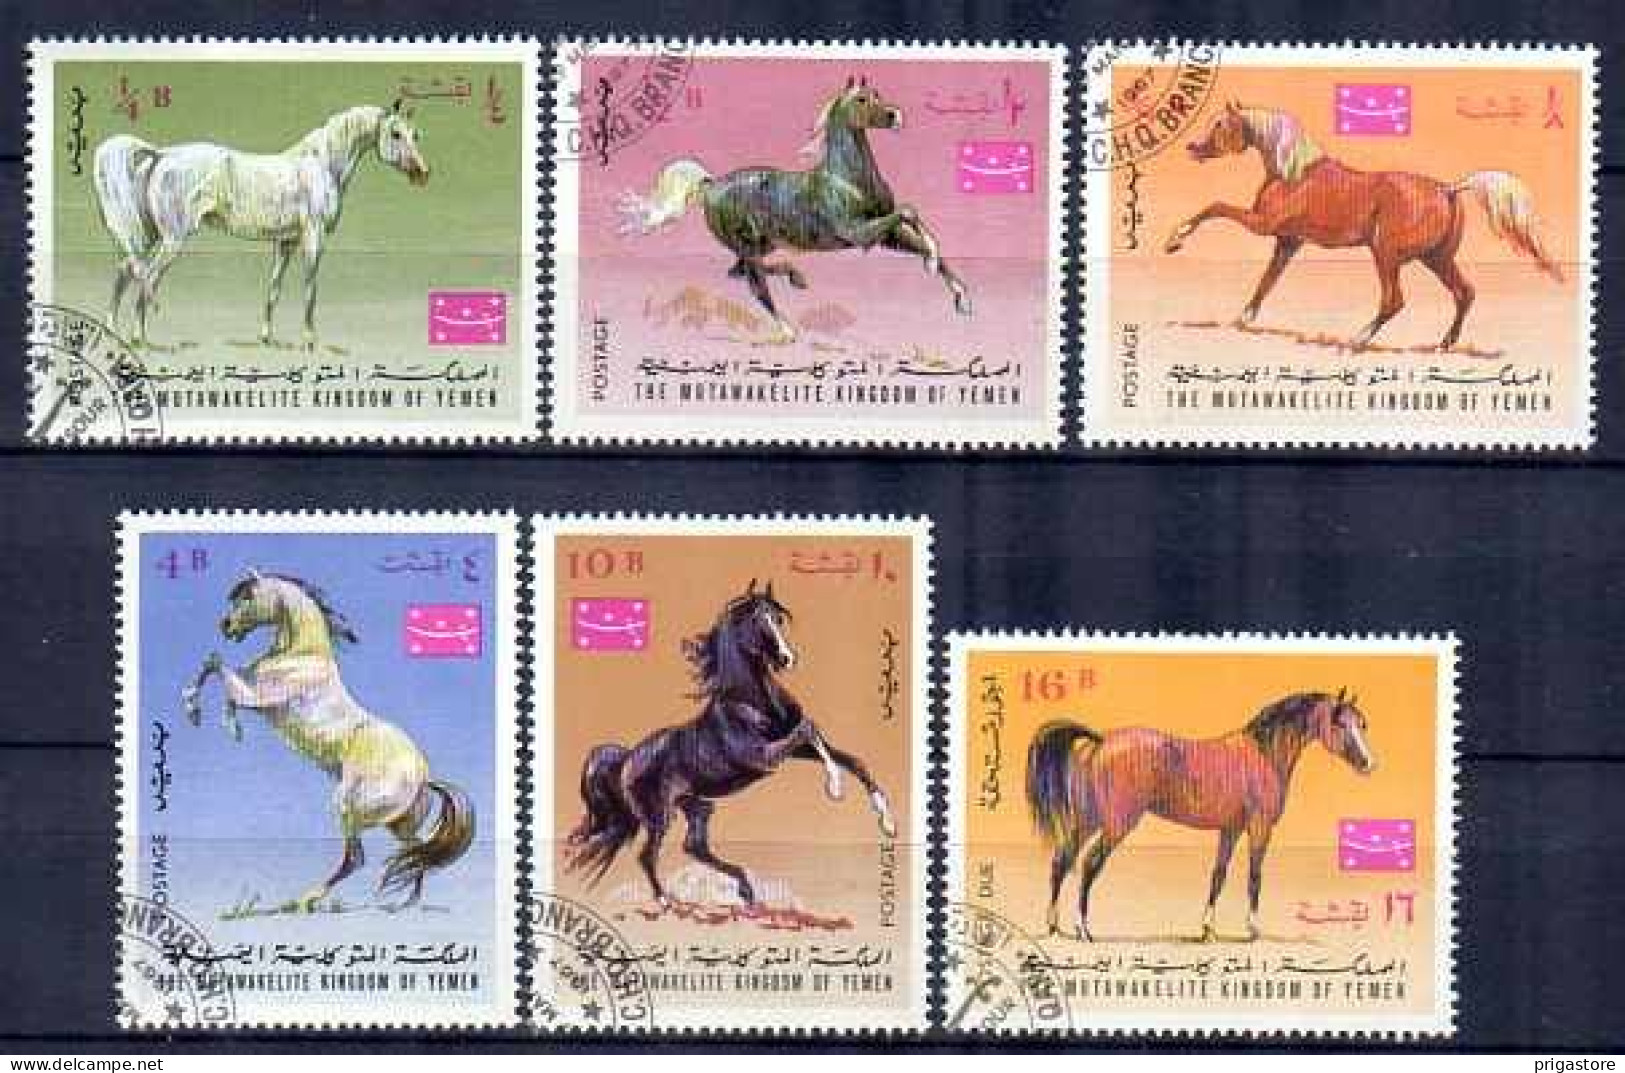 Chevaux Yemen 1967 (10) Yvert N° Non Répertorié Oblitéré Used - Paarden